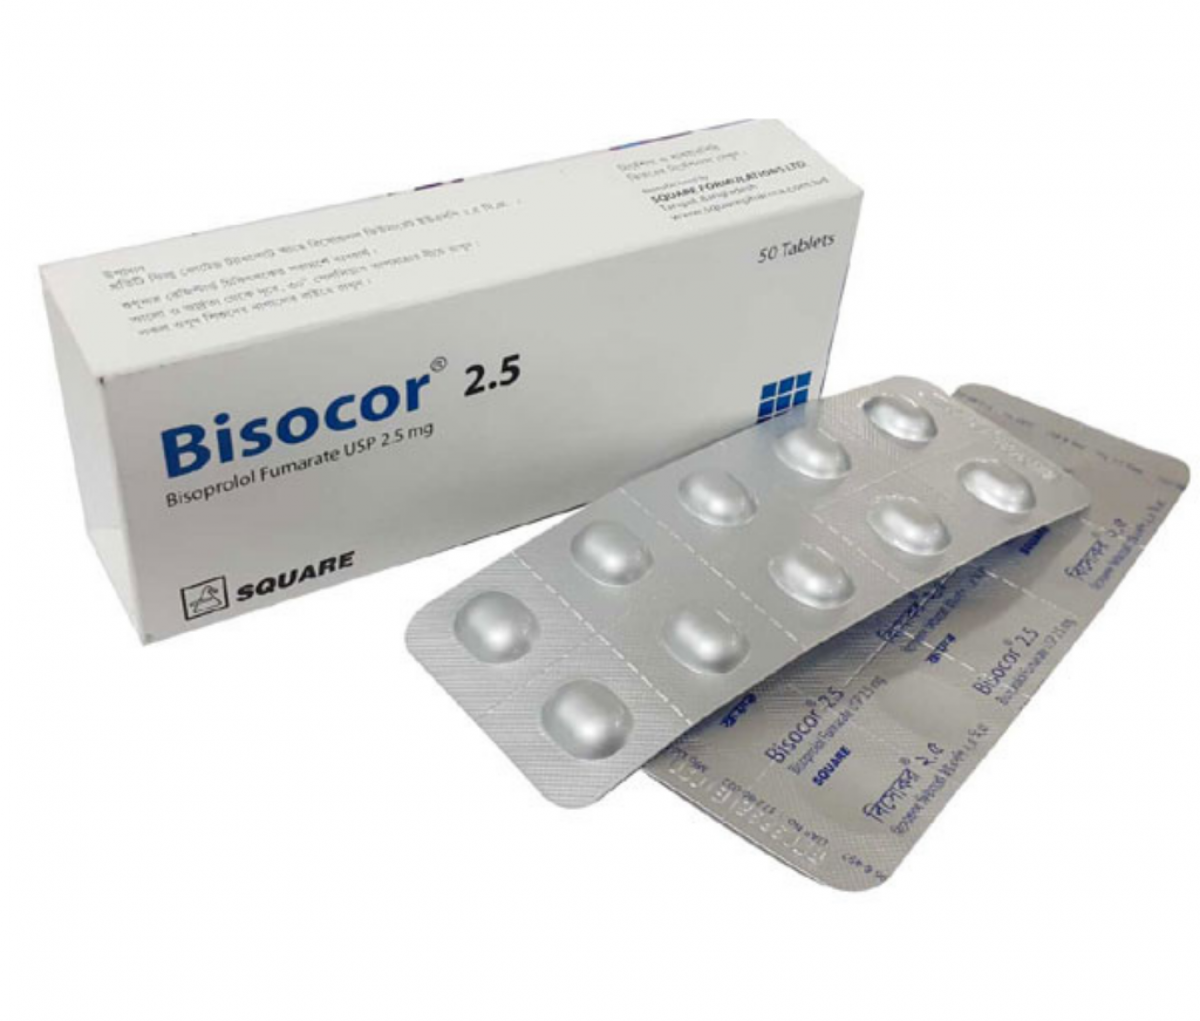 Bisocor 2.5mg USP Tablet